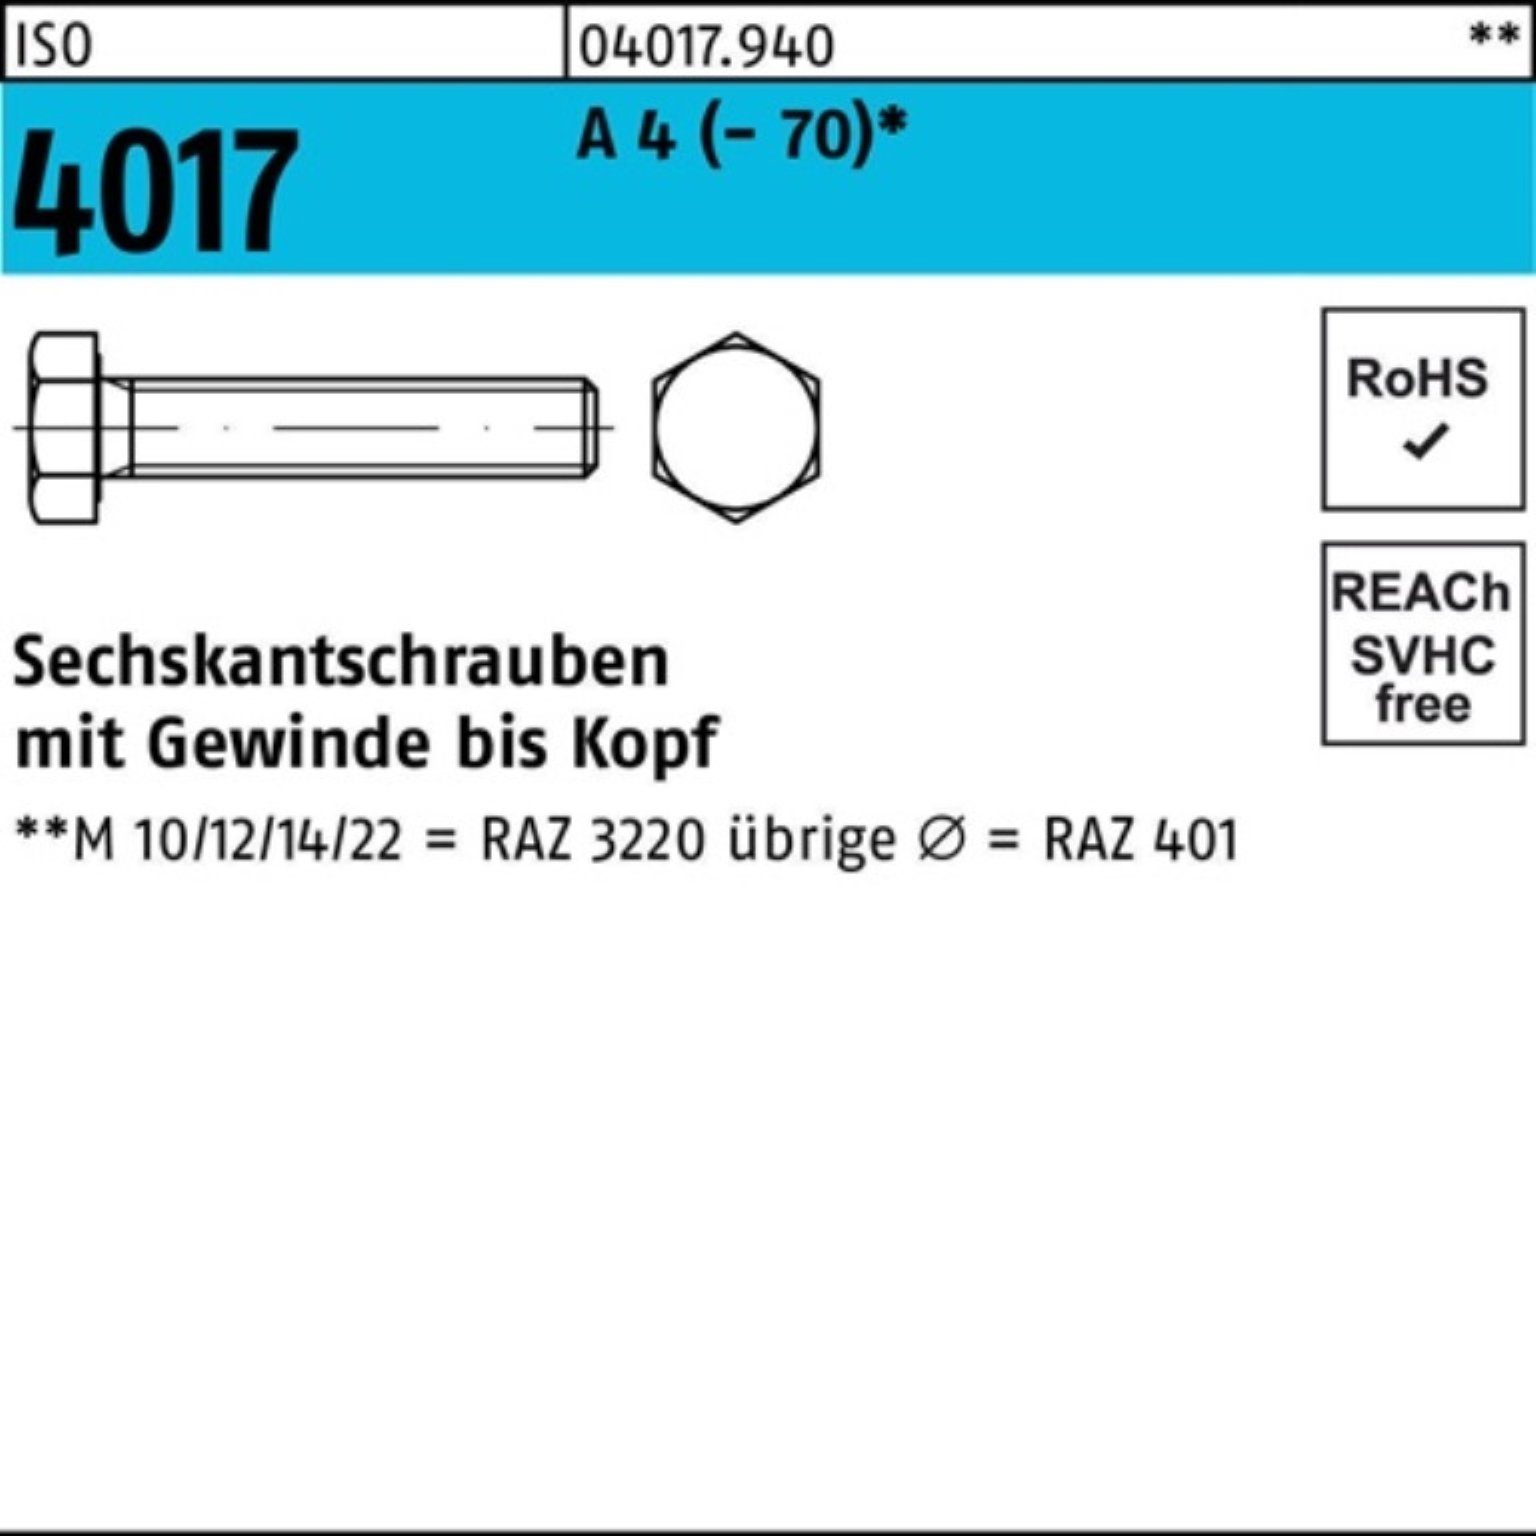 M8x Bufab Sechskantschraube 4017 200er 10 A Pack ISO Stück Sechskantschraube 200 VG (70) 4